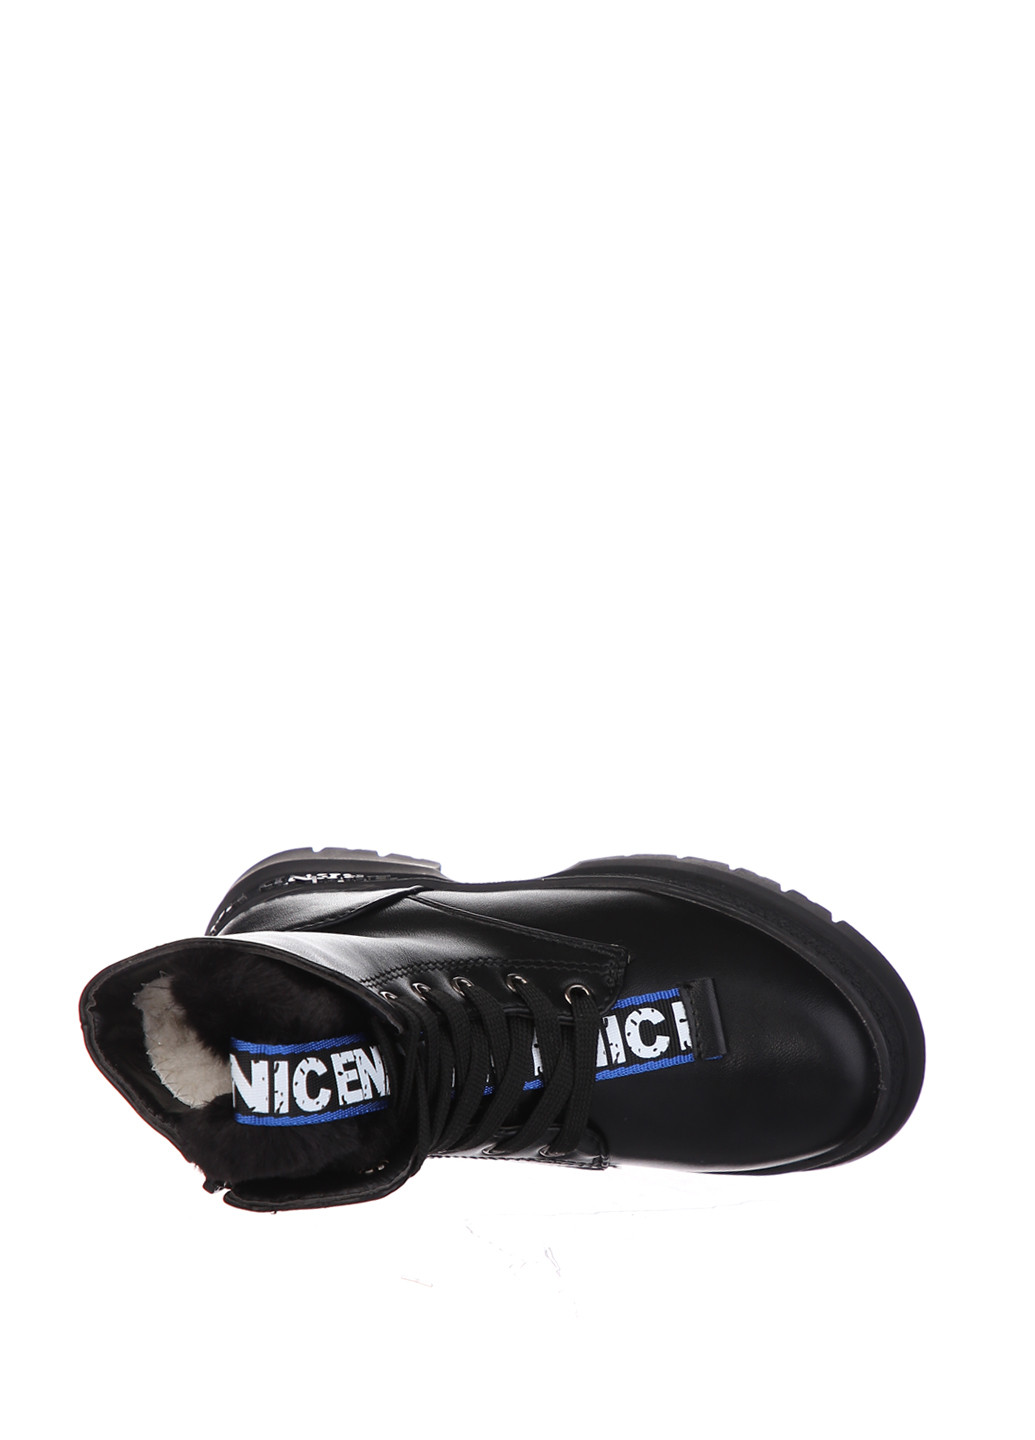 Черные кэжуал зимние ботинки Clibee